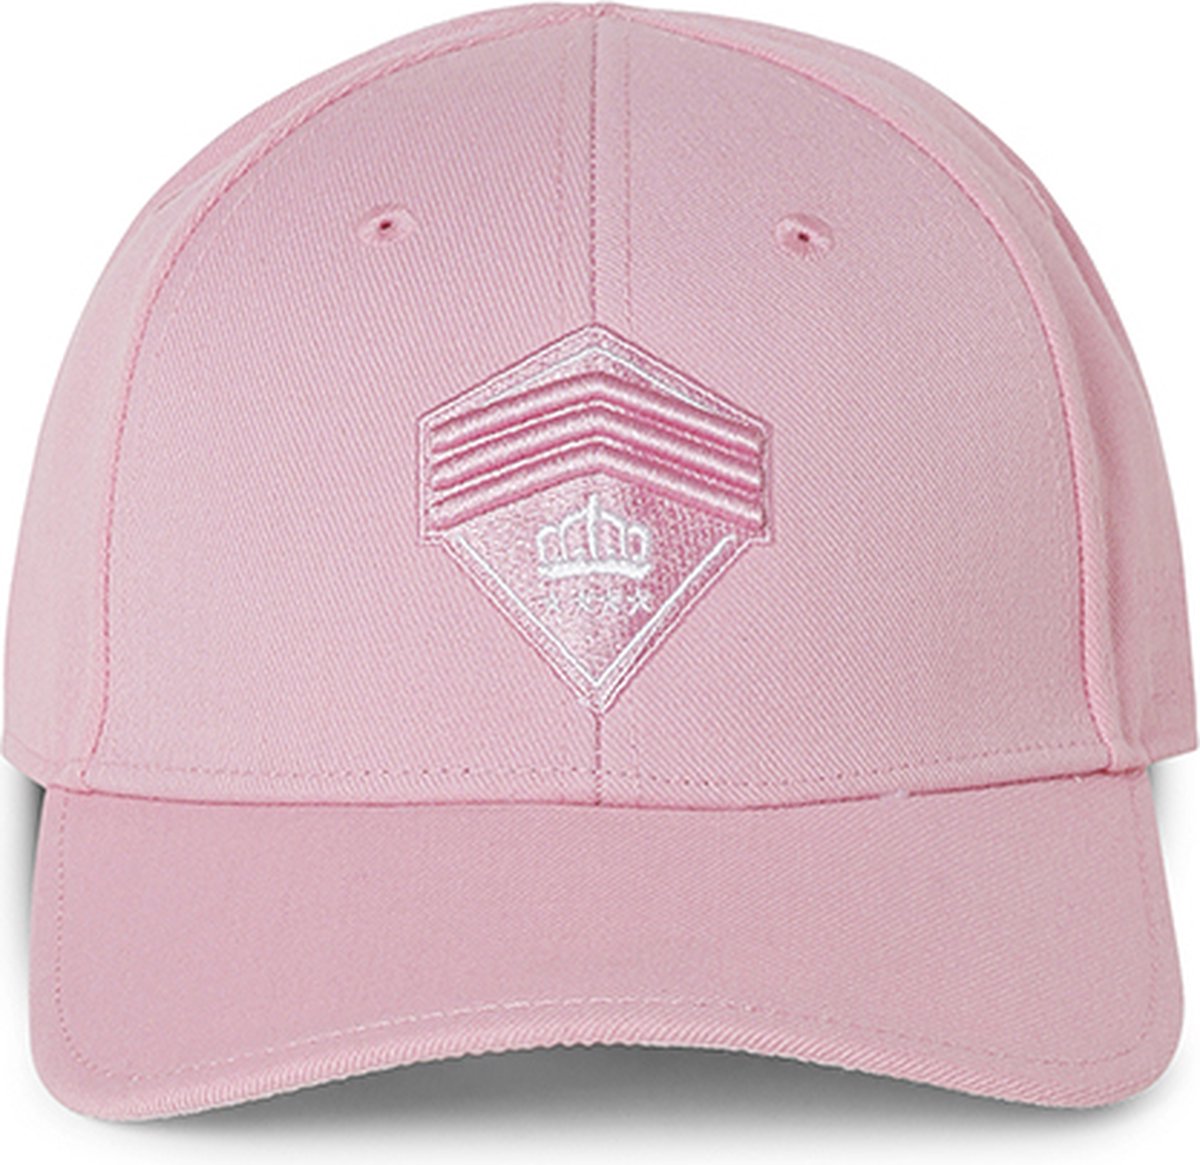 Hassing1894 model Evident - cap - baseball cap - roze - verstelbare pet - trendy - stijlvol - modieus - het hele jaar door